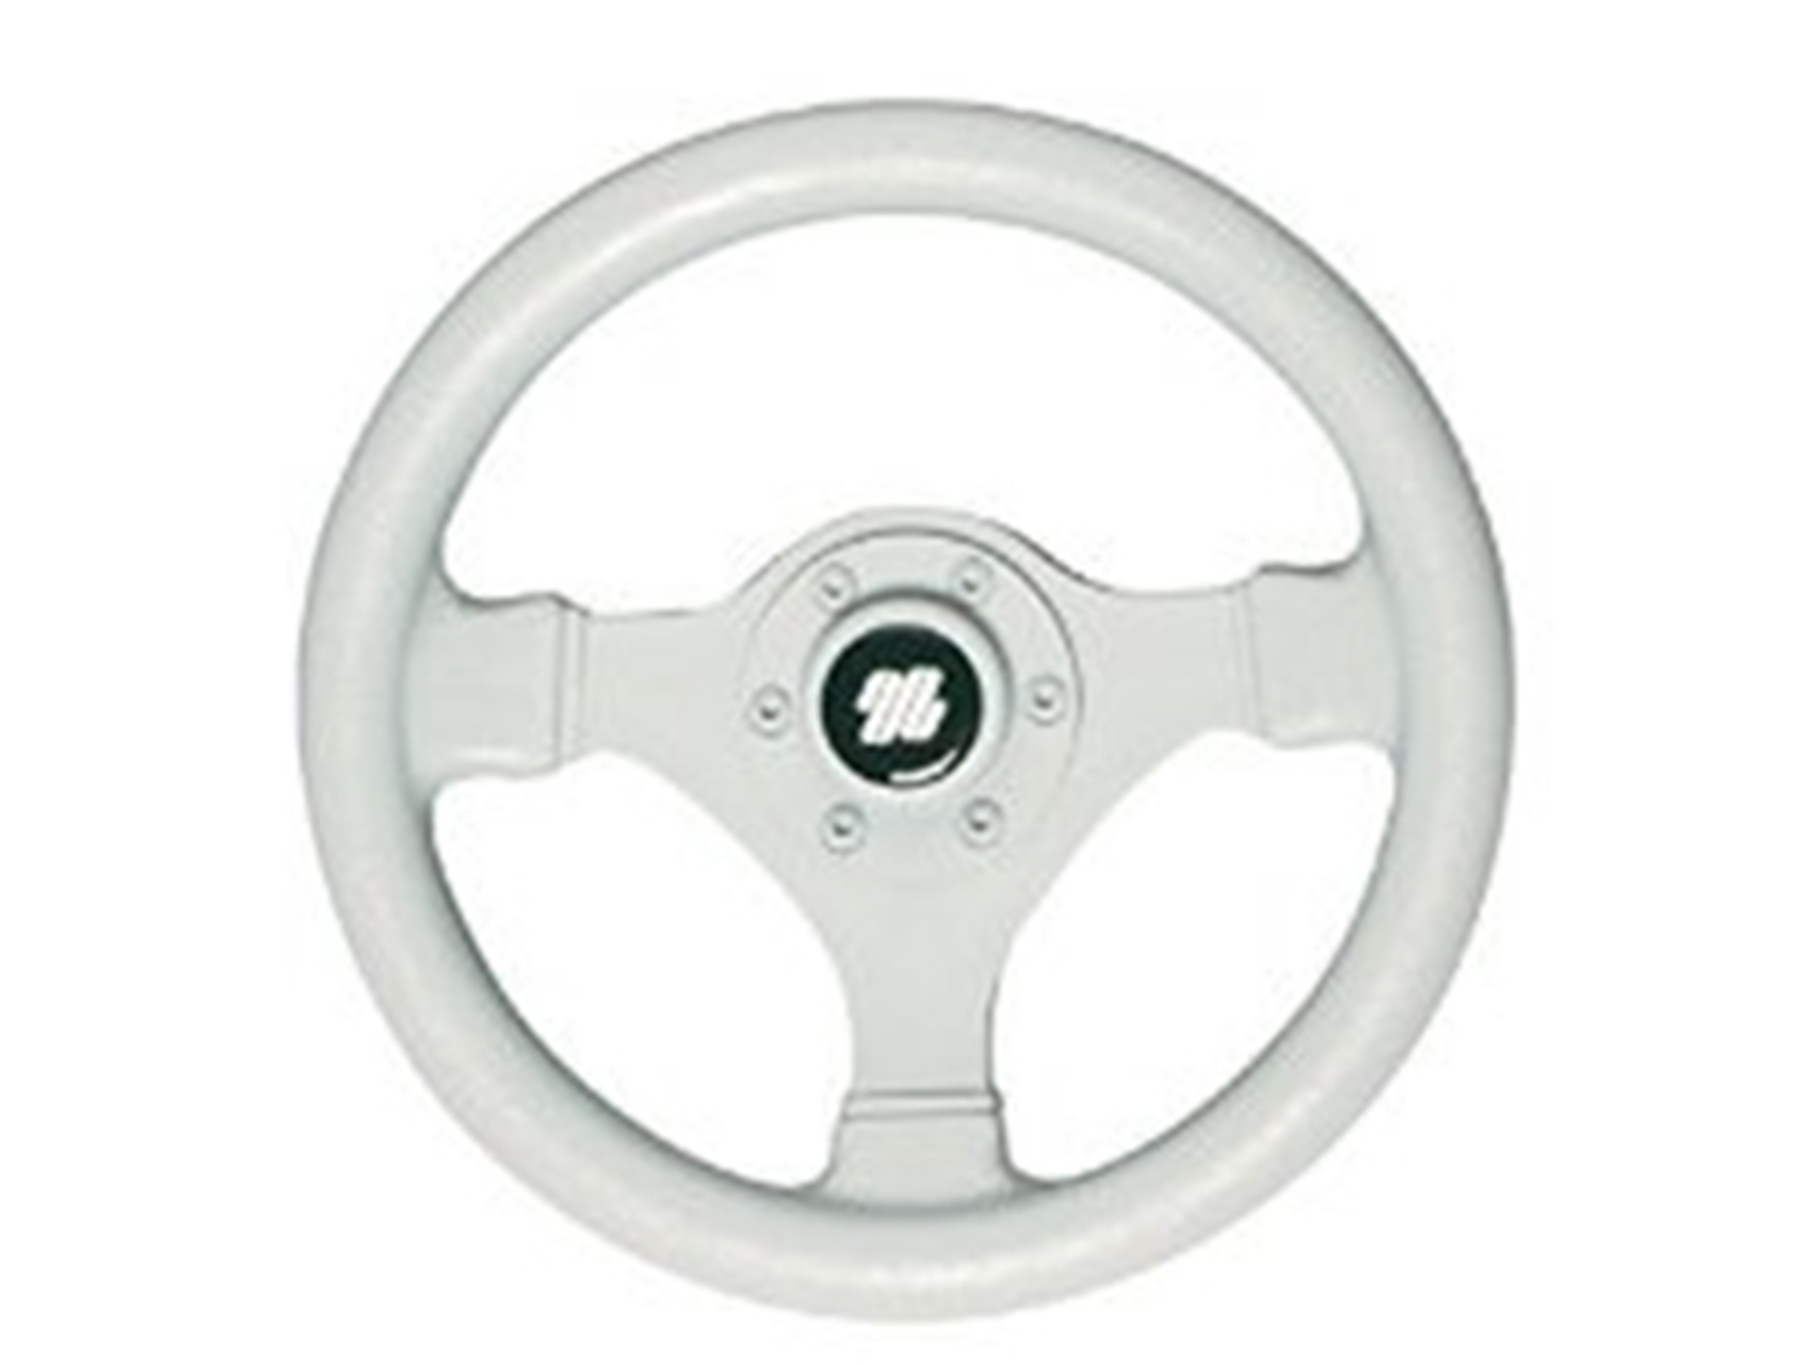 Ultraflex V45GW 3-Spoke Grey Steering Wheel